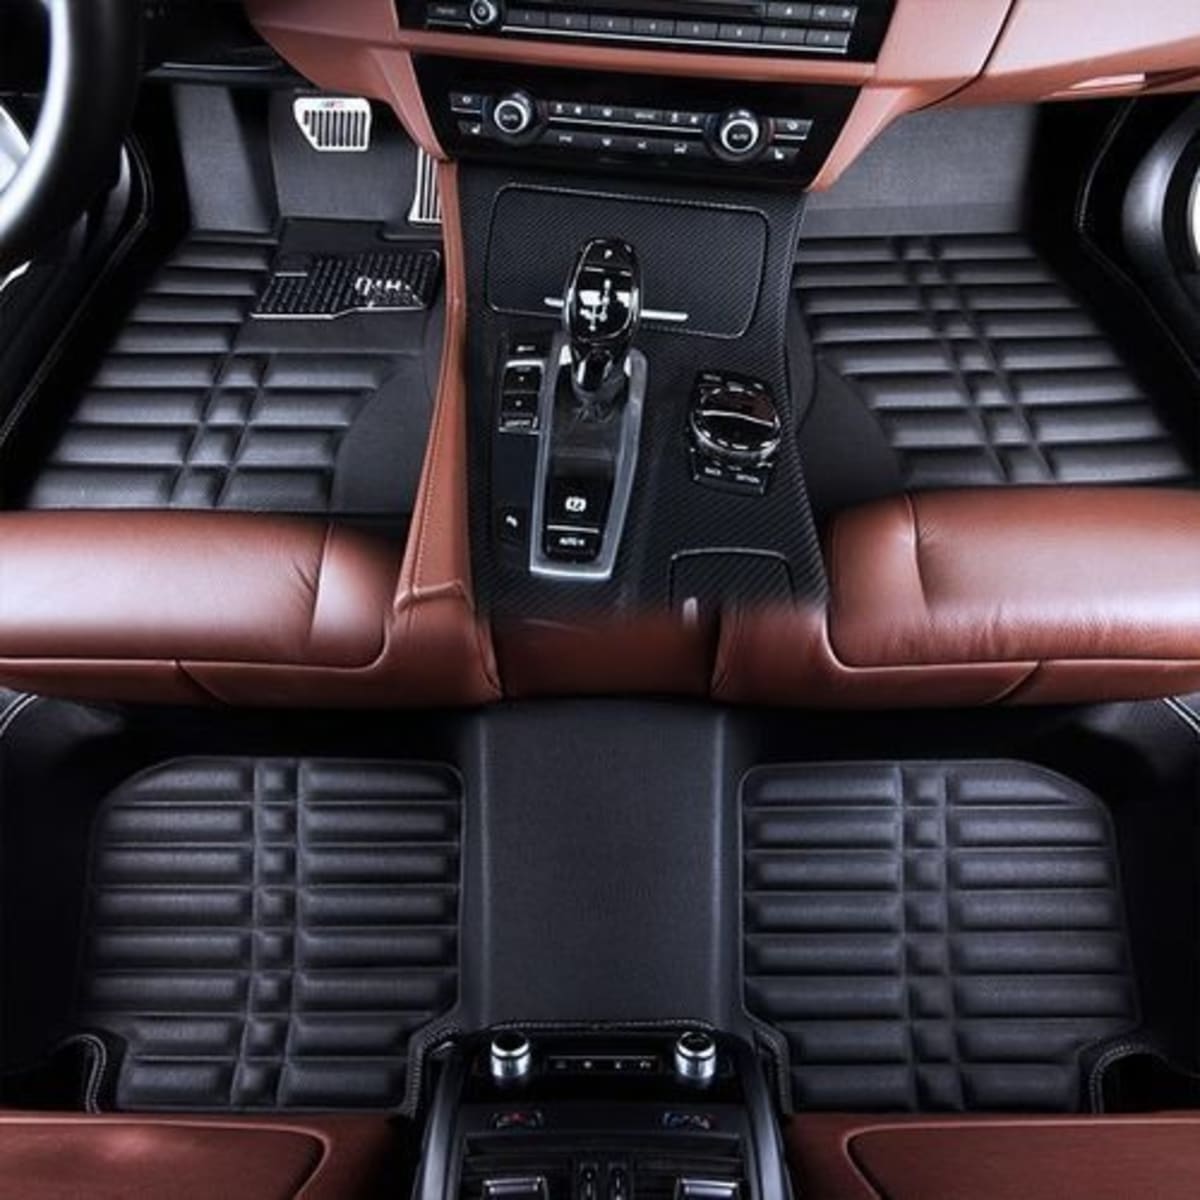 Car Leather Foot Mat/ Customize 5d Car Floor Mat/carpet - Rx300